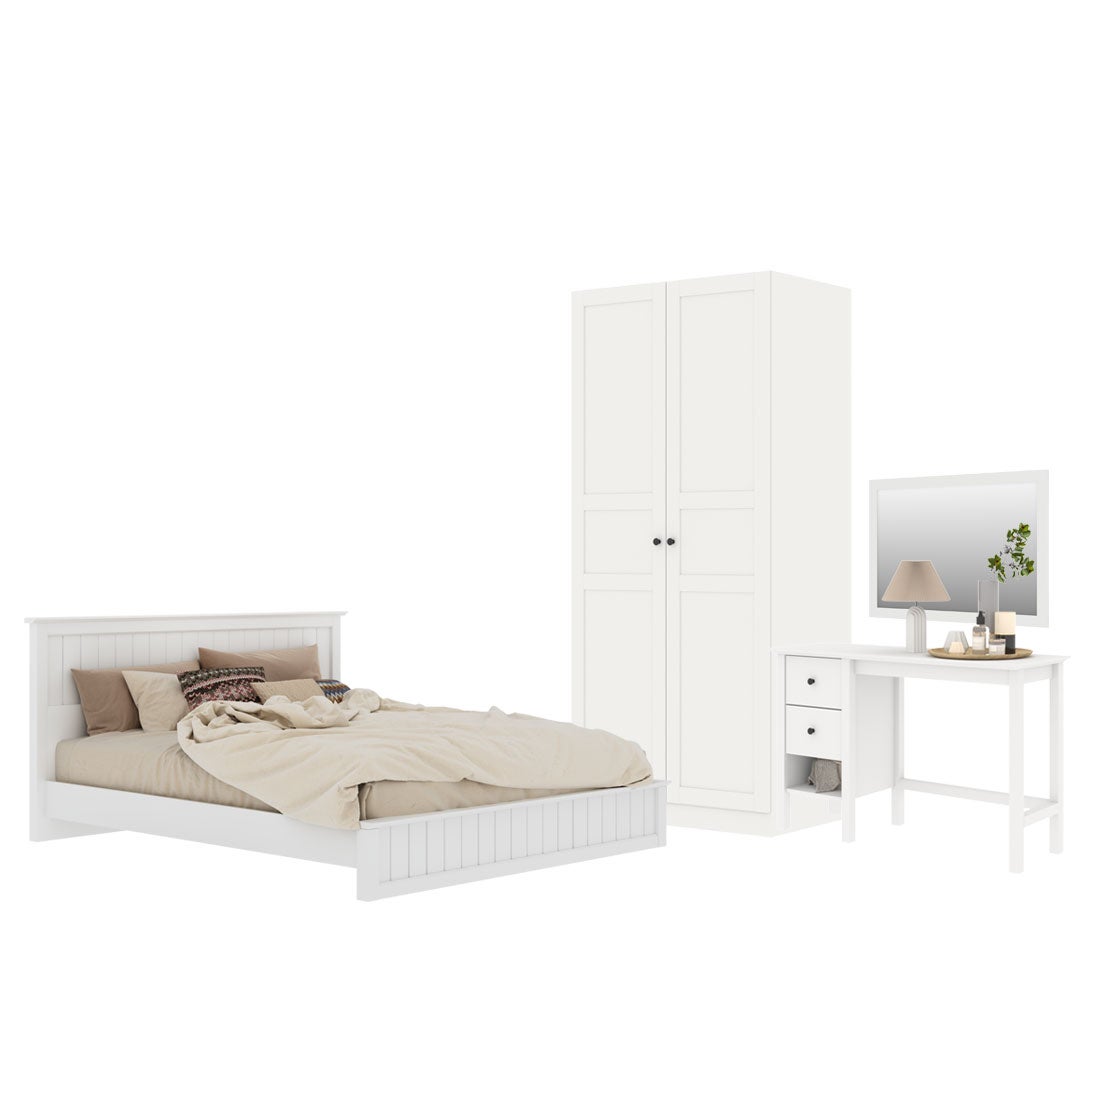 ชุดห้องนอน ขนาด 6 ฟุต รุ่น Moneta & ตู้บานเเปิด 90 ซม.  สีขาว01